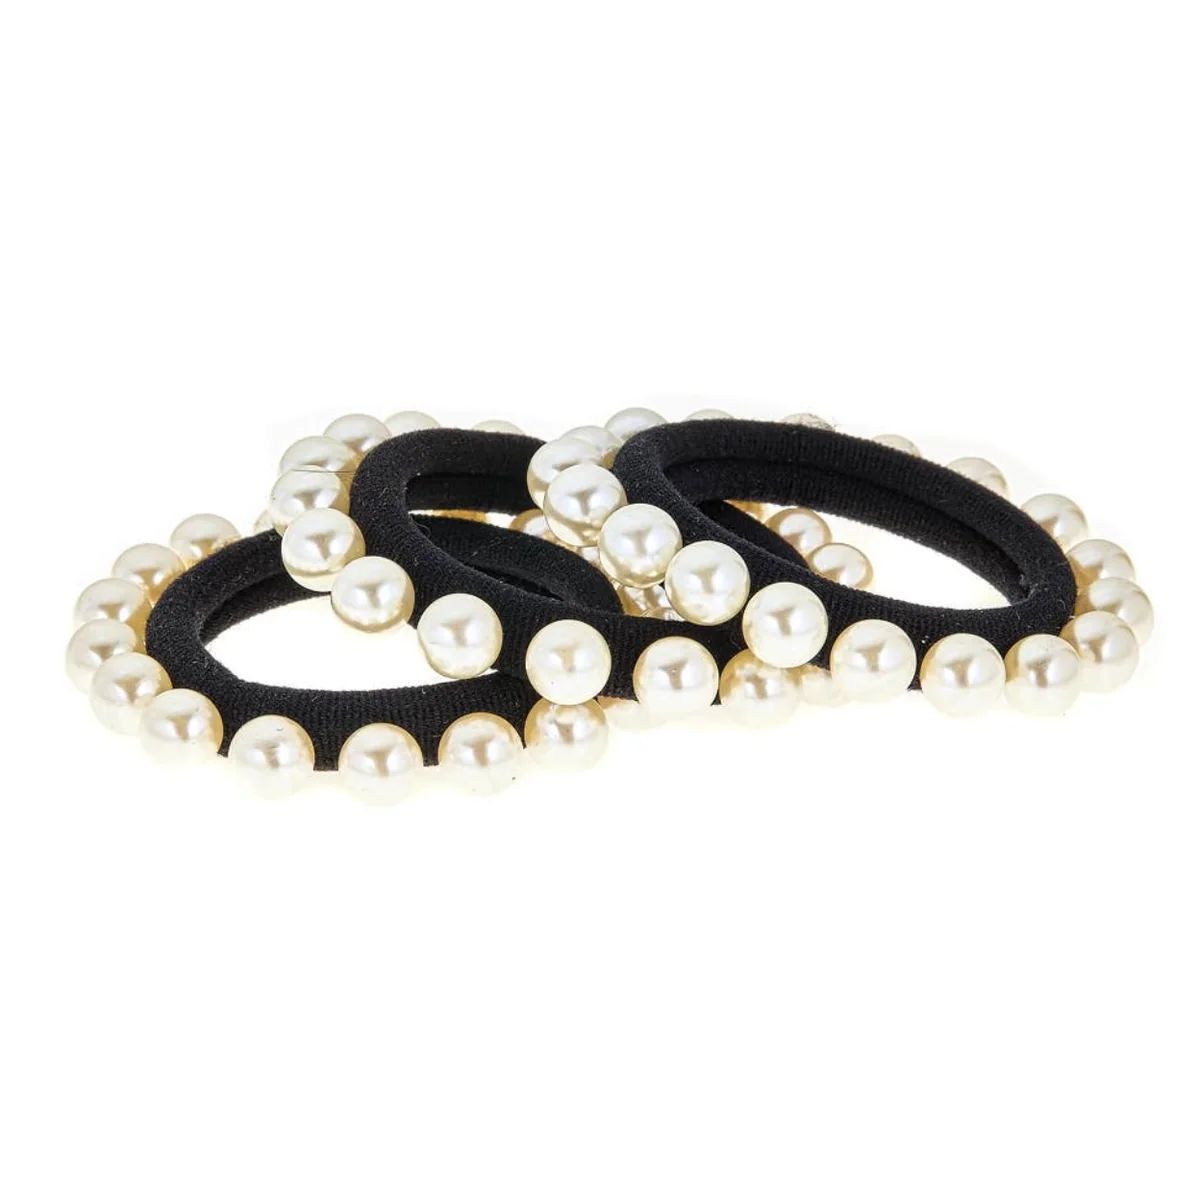 White Pearl Black Band Hair Tie Set | Sea Marie Designs